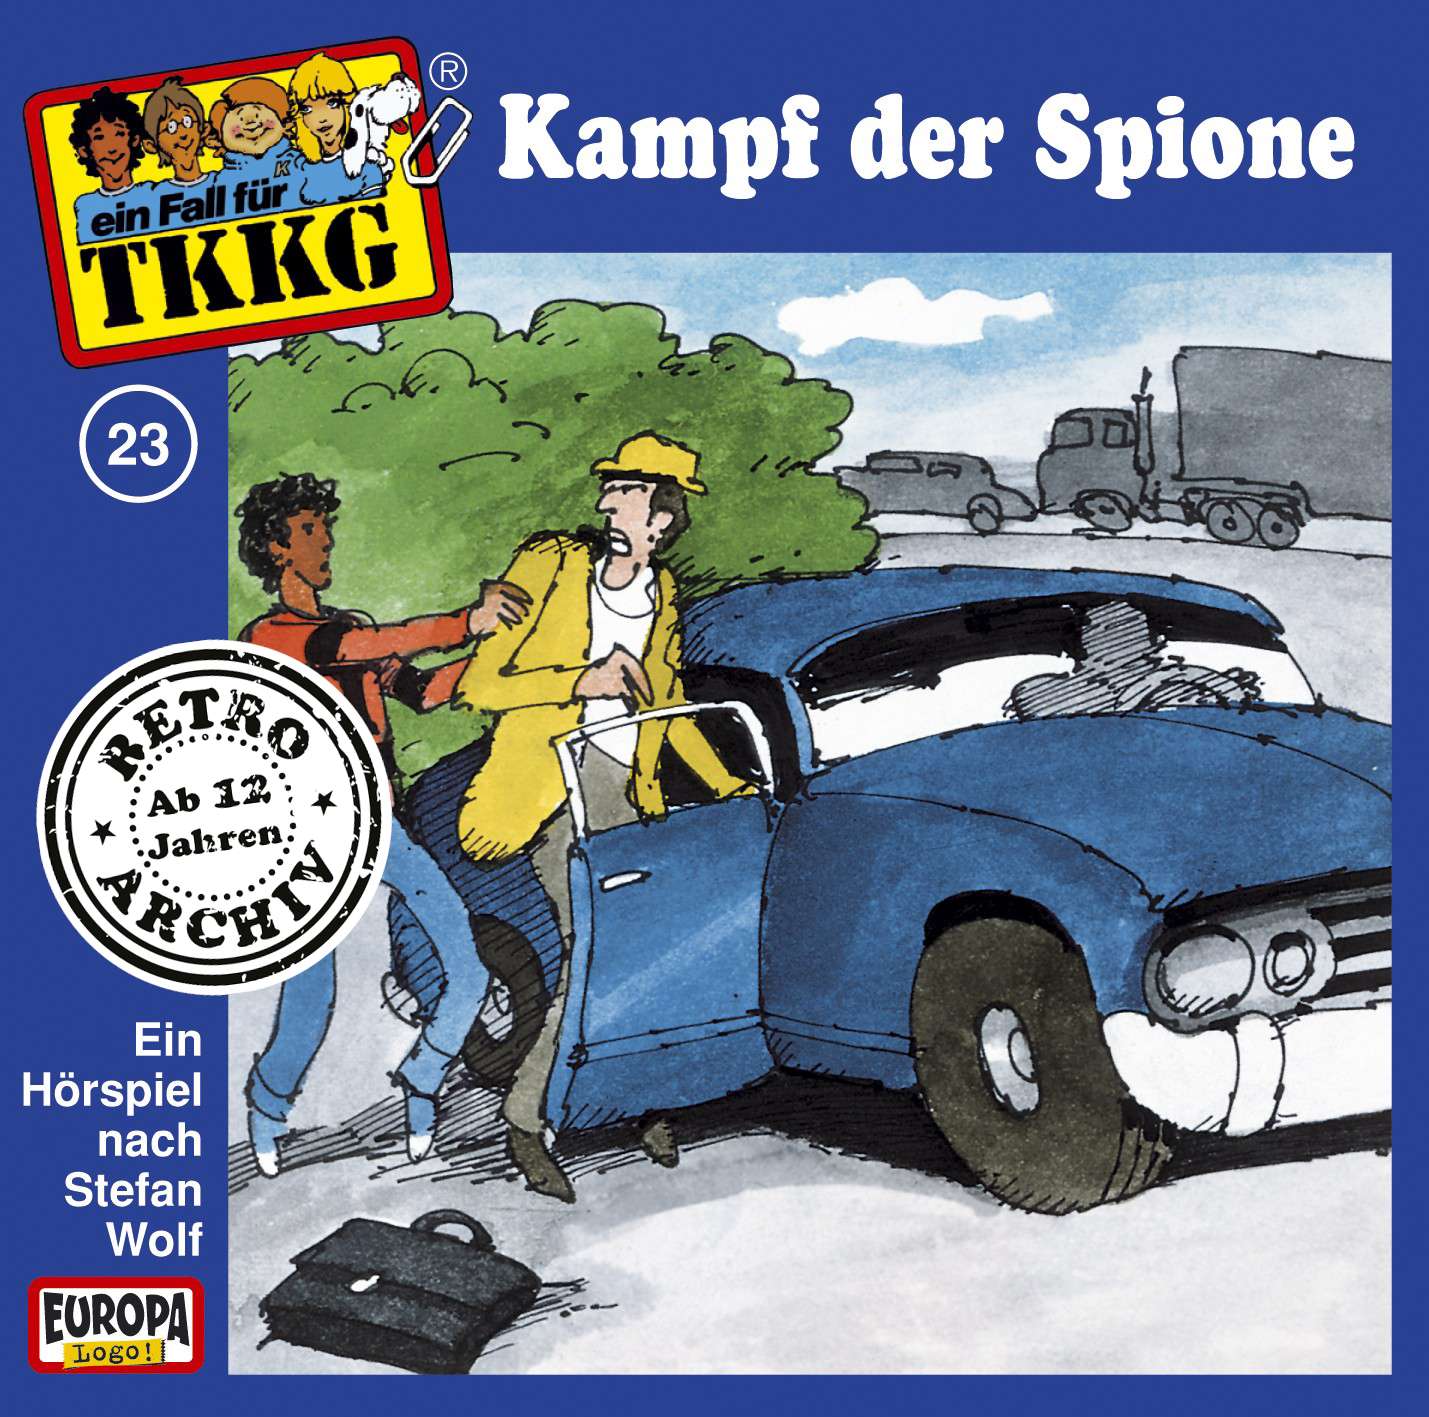 TKKG Retro-Archiv: Kampf der Spione